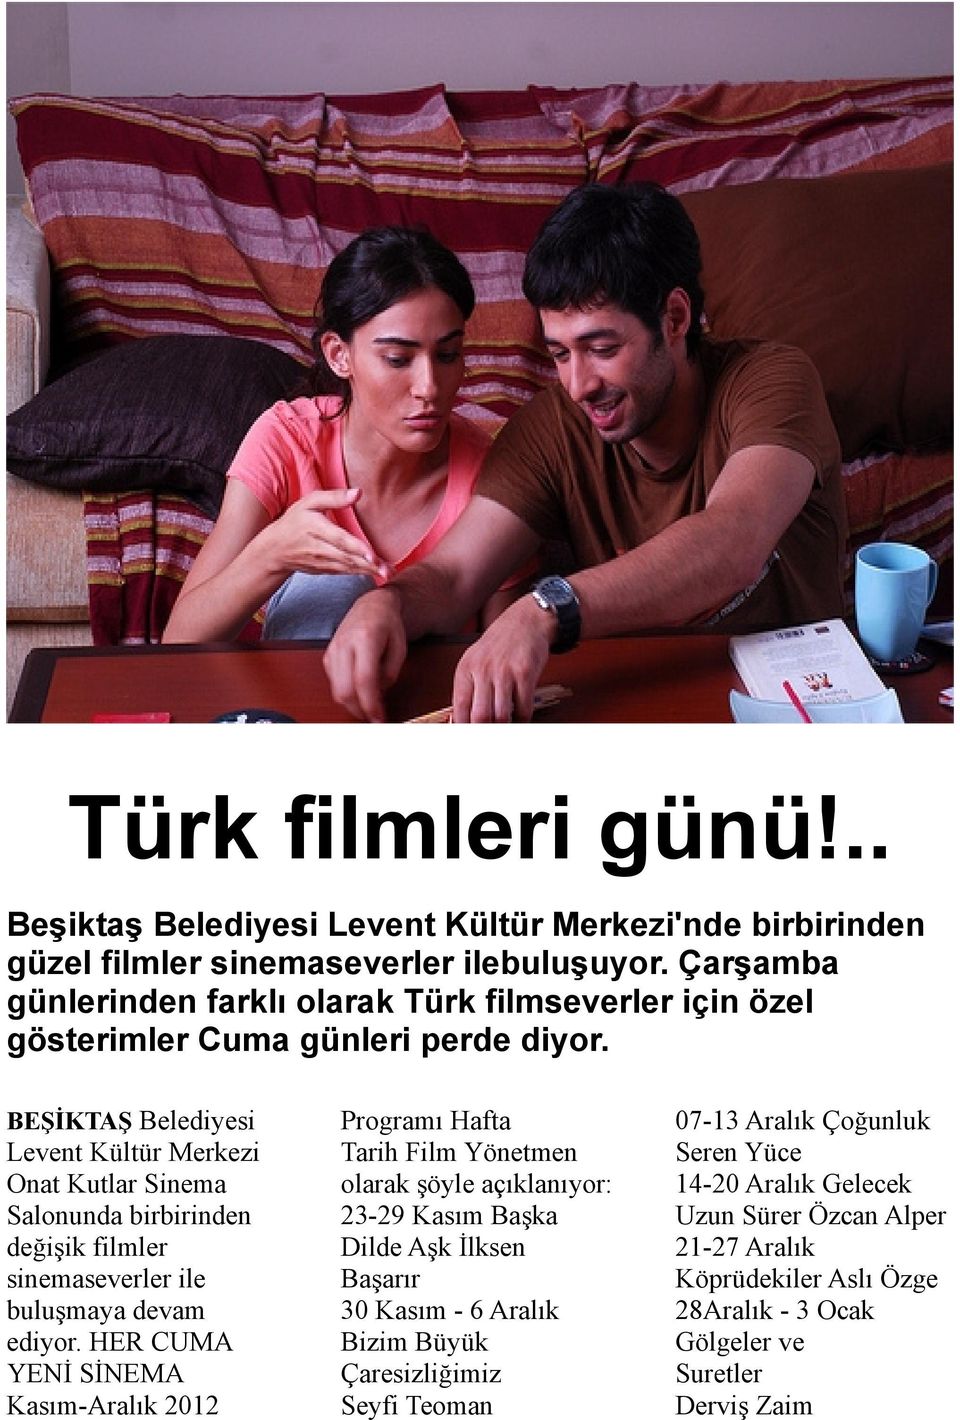 BEŞİKTAŞ Belediyesi Levent Kültür Merkezi Onat Kutlar Sinema Salonunda birbirinden değişik filmler sinemaseverler ile buluşmaya devam ediyor.